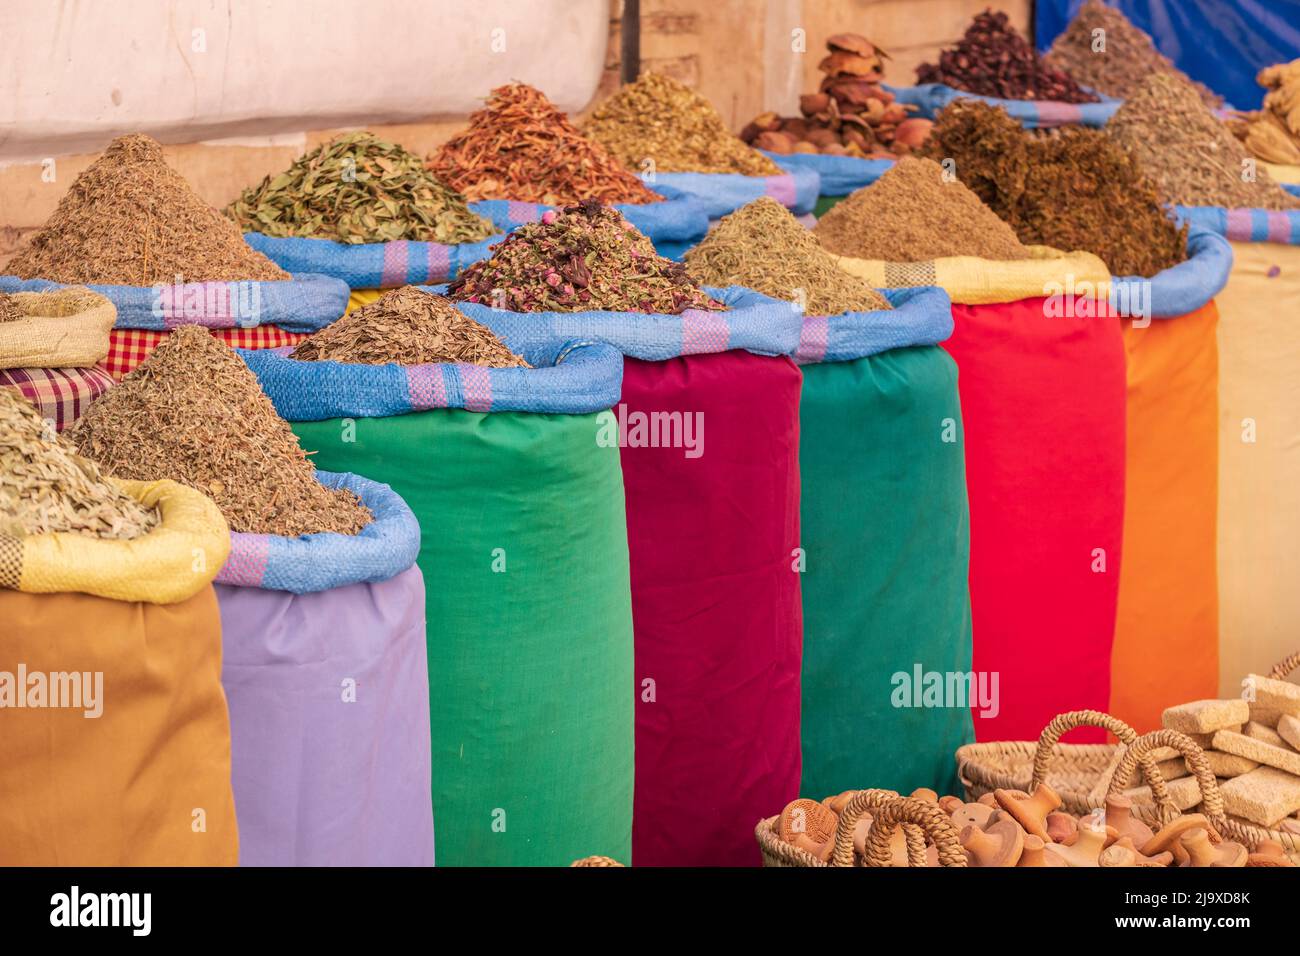 flores secas para cocinar y la decoración aromática, zoco de la plaza de las especias, marrakech, marruecos, áfrica Foto de stock